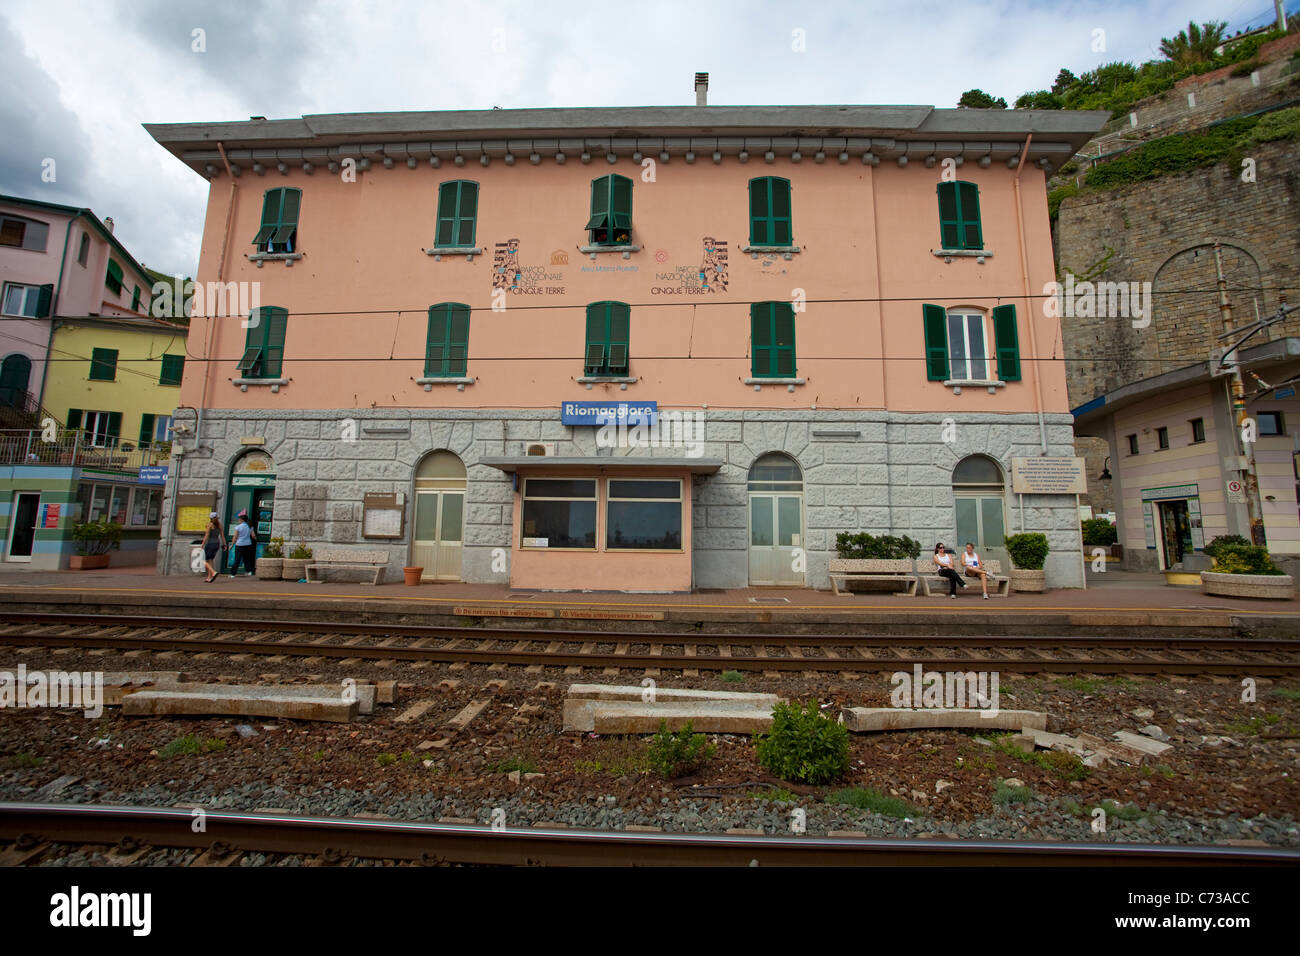 Rail station of fishing village Riomaggiore, National park Cinque Terre, Unesco World Heritage site, Liguria di Levante, Italy, Mediterranean sea Stock Photo